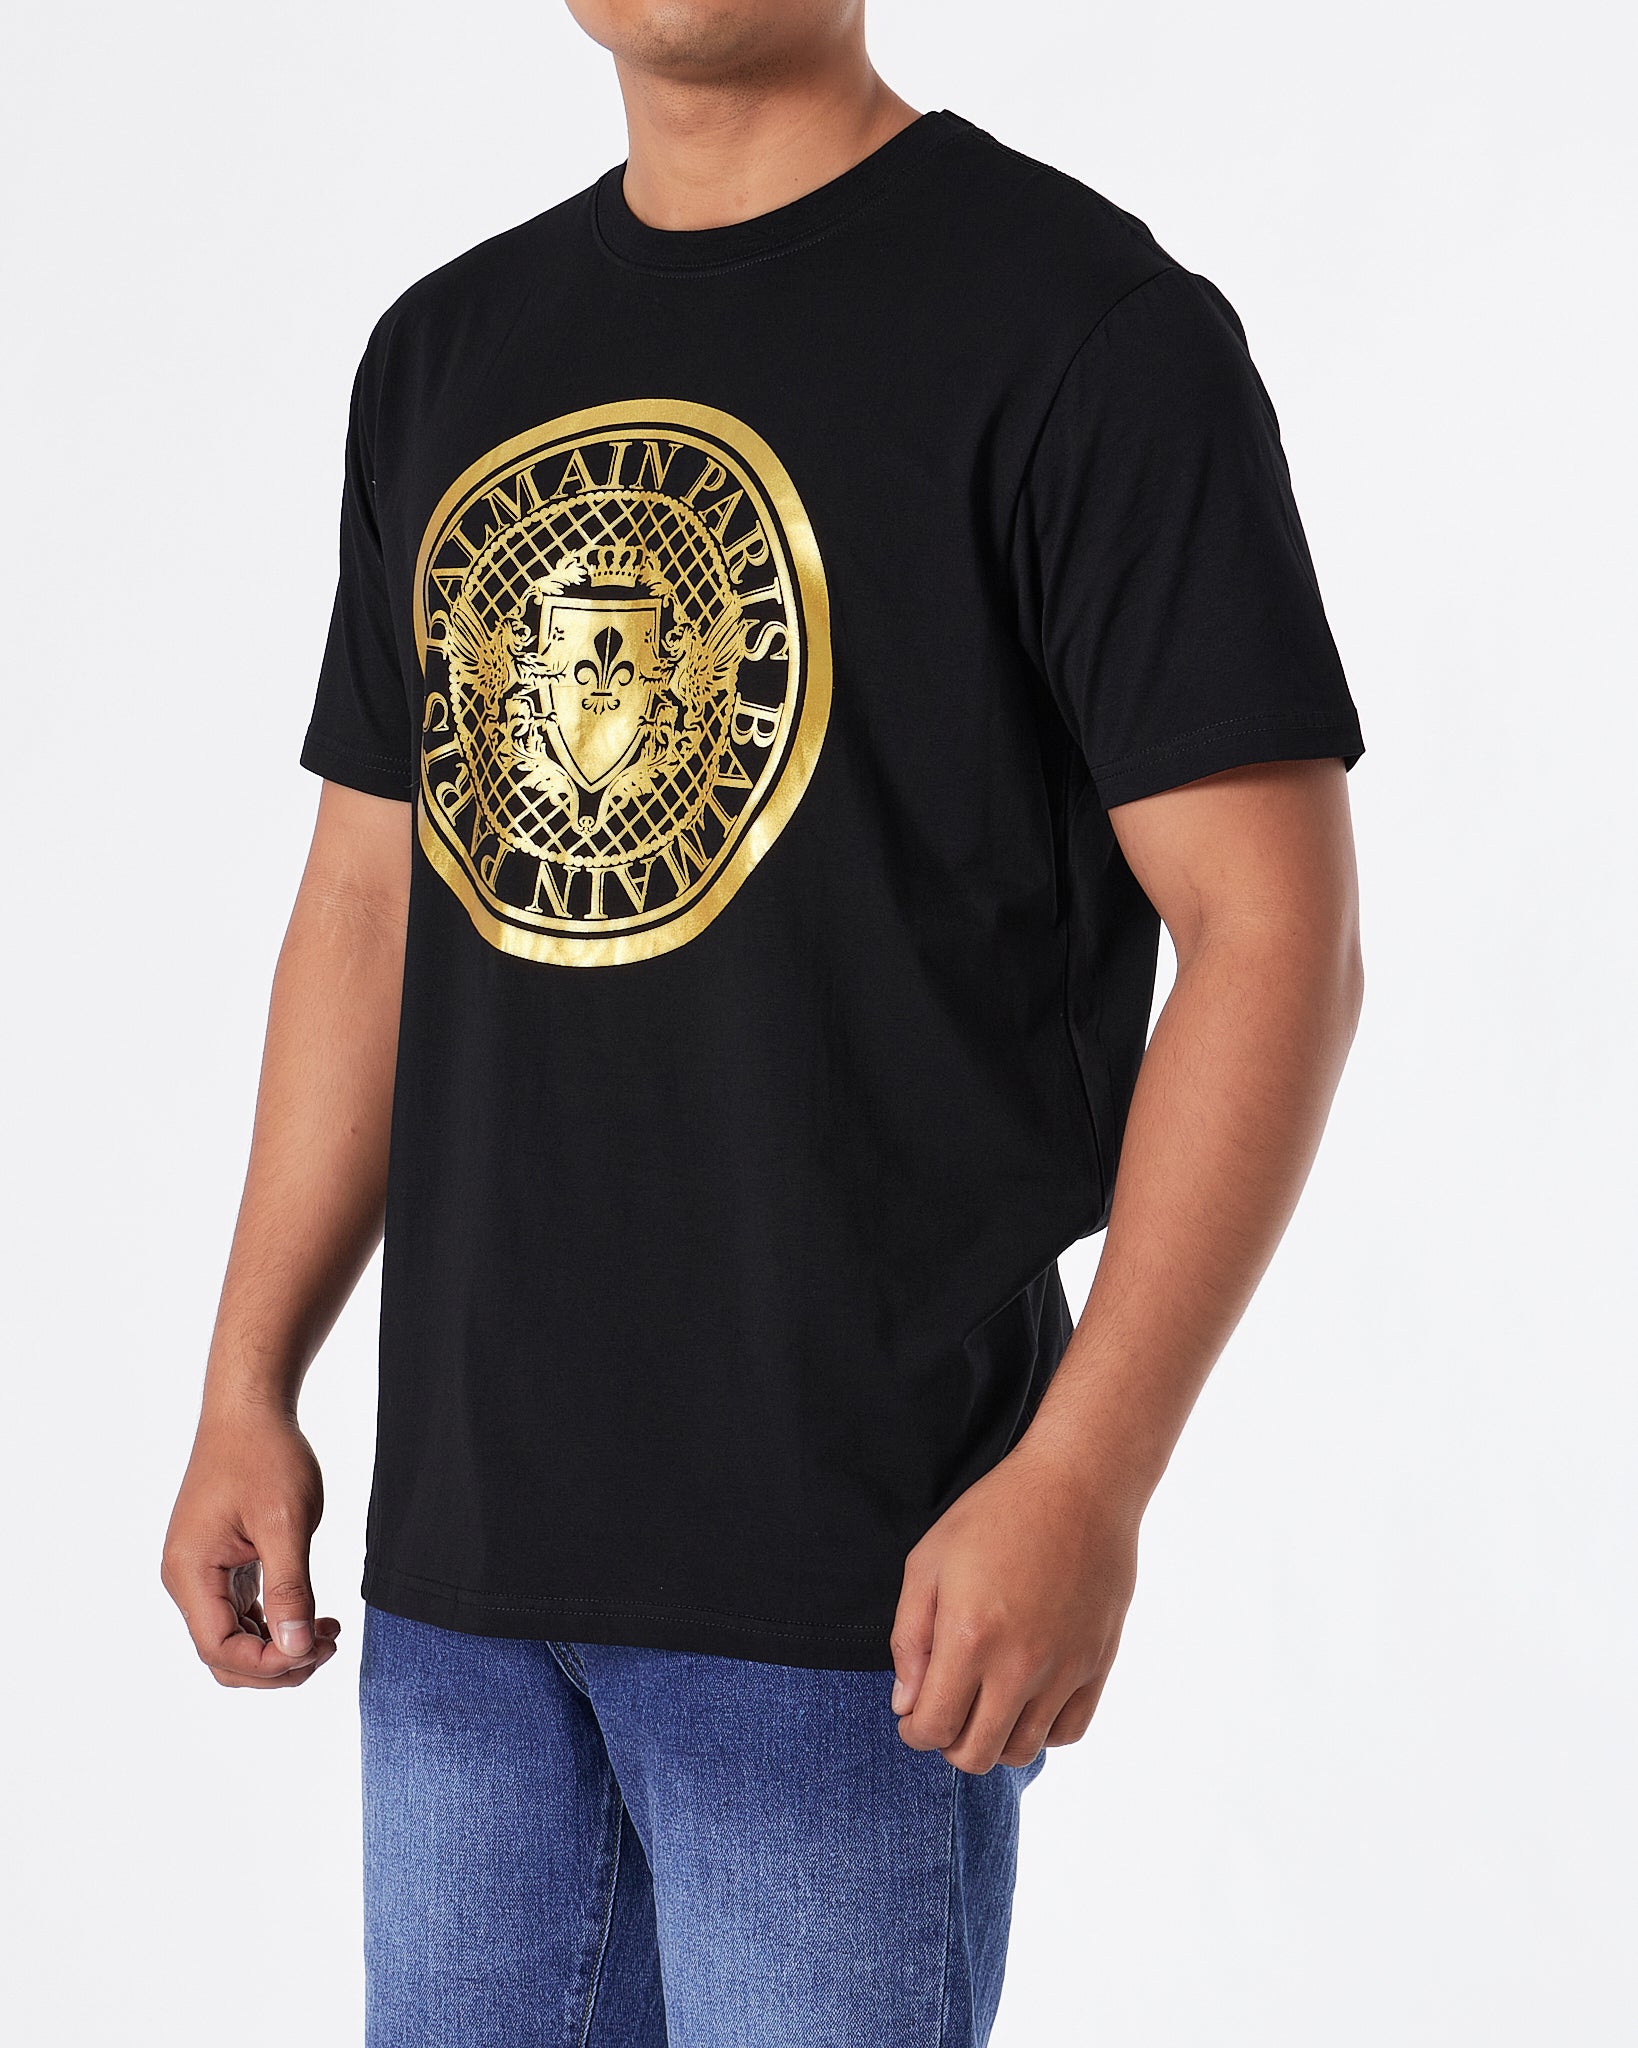 BAM Round Gold Printed Men Black T-Shirt 20.90